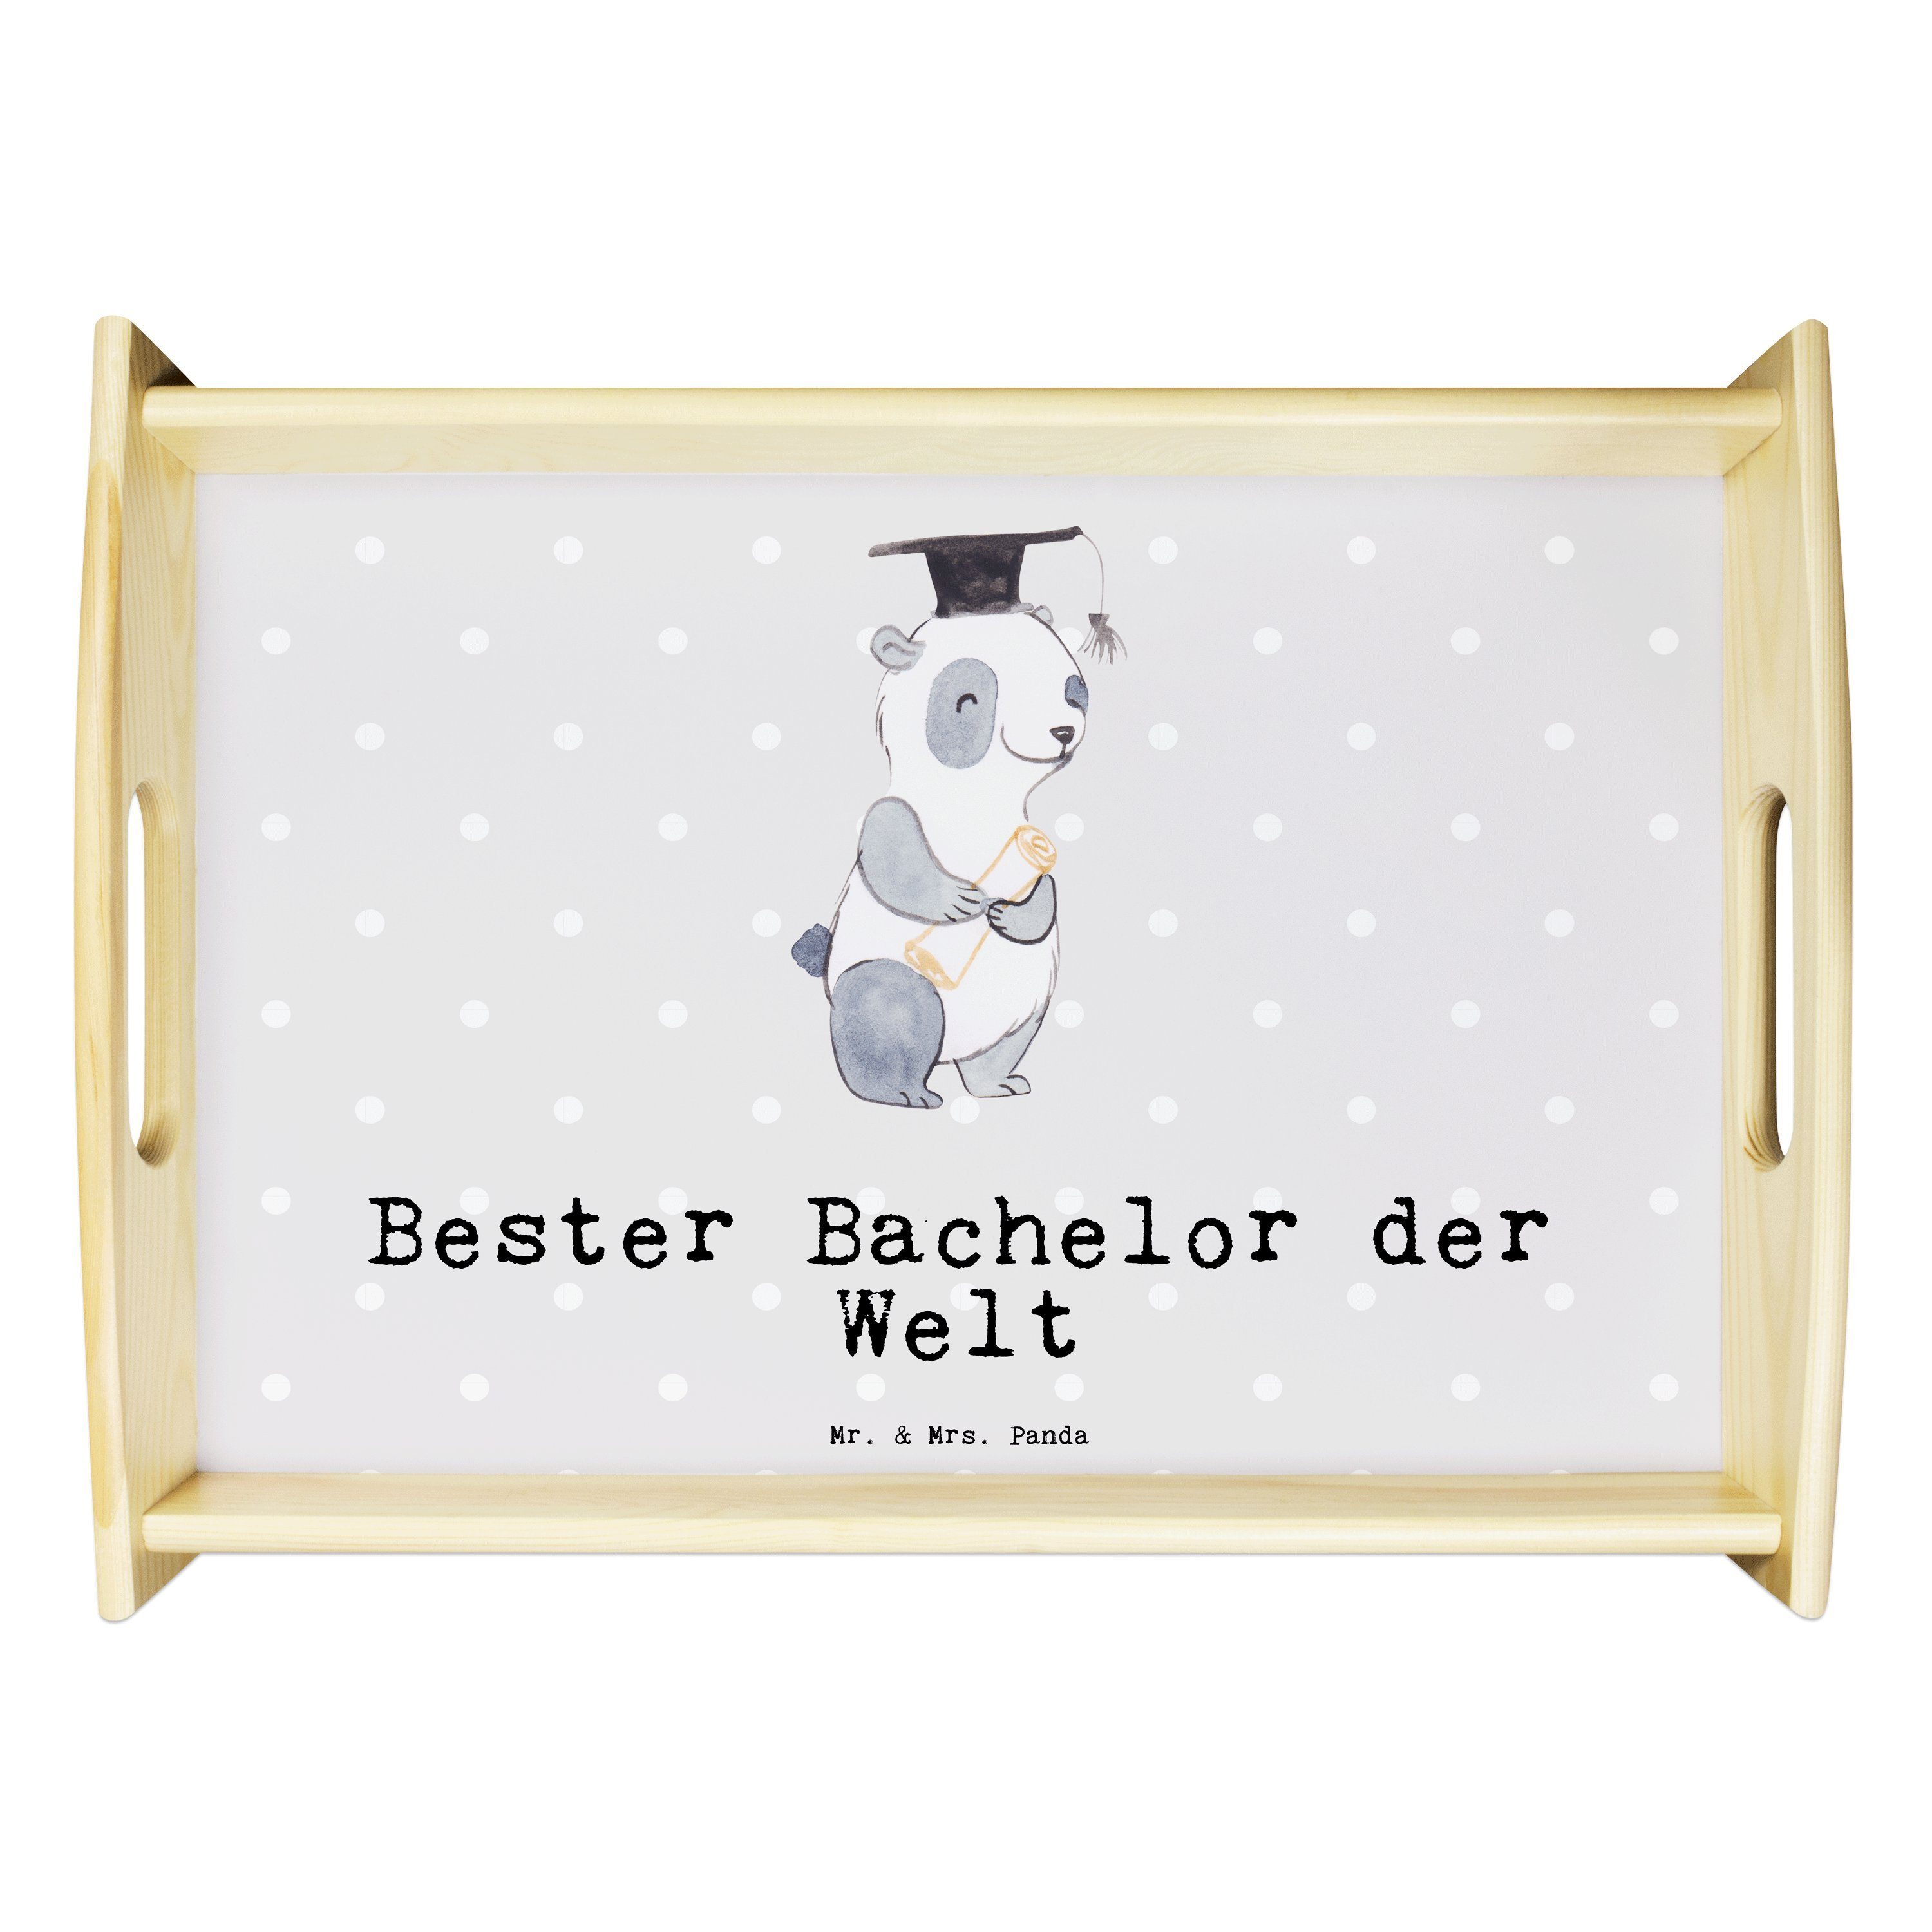 Bachelor Echtholz Welt der - - Bester lasiert, Panda (1-tlg) Tablett Panda witzig, Grau Geschenk, Hol, & Mr. Mrs. Pastell